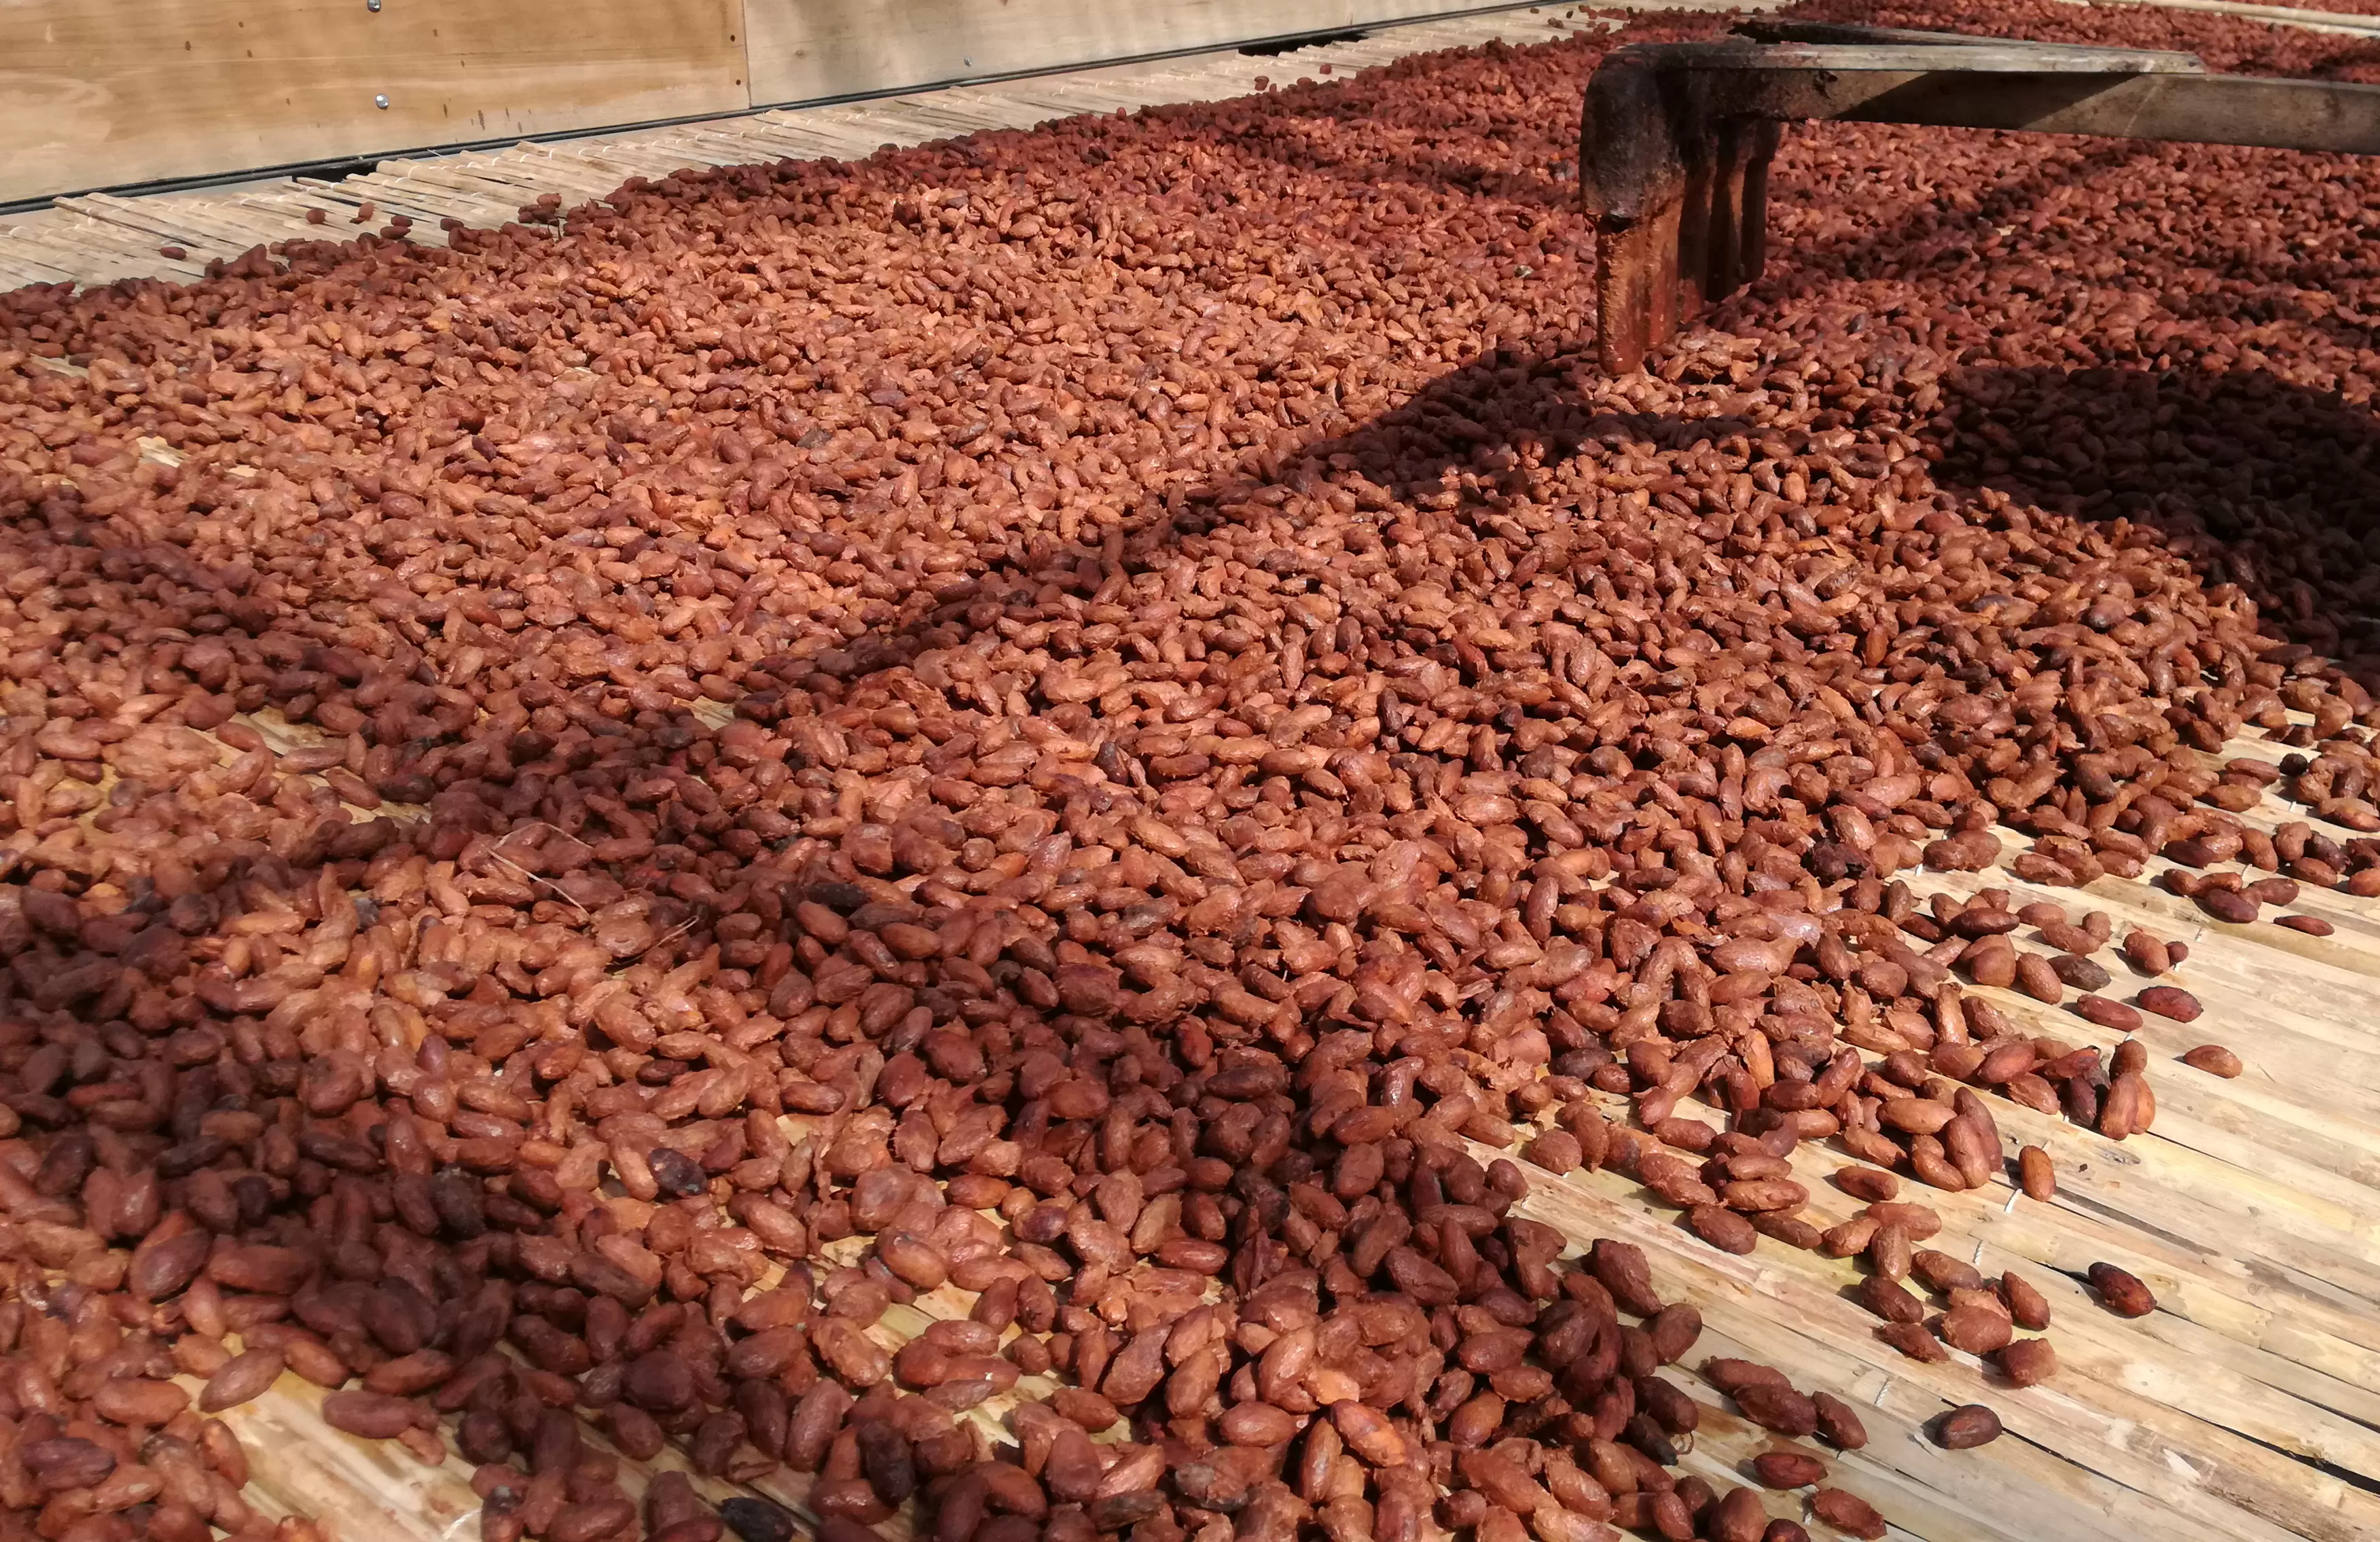 La finca Villa Gaby, en Arauquita, ha sido un exponente del empoderamiento de su territorio a través de la cosecha y transformación del cacao.